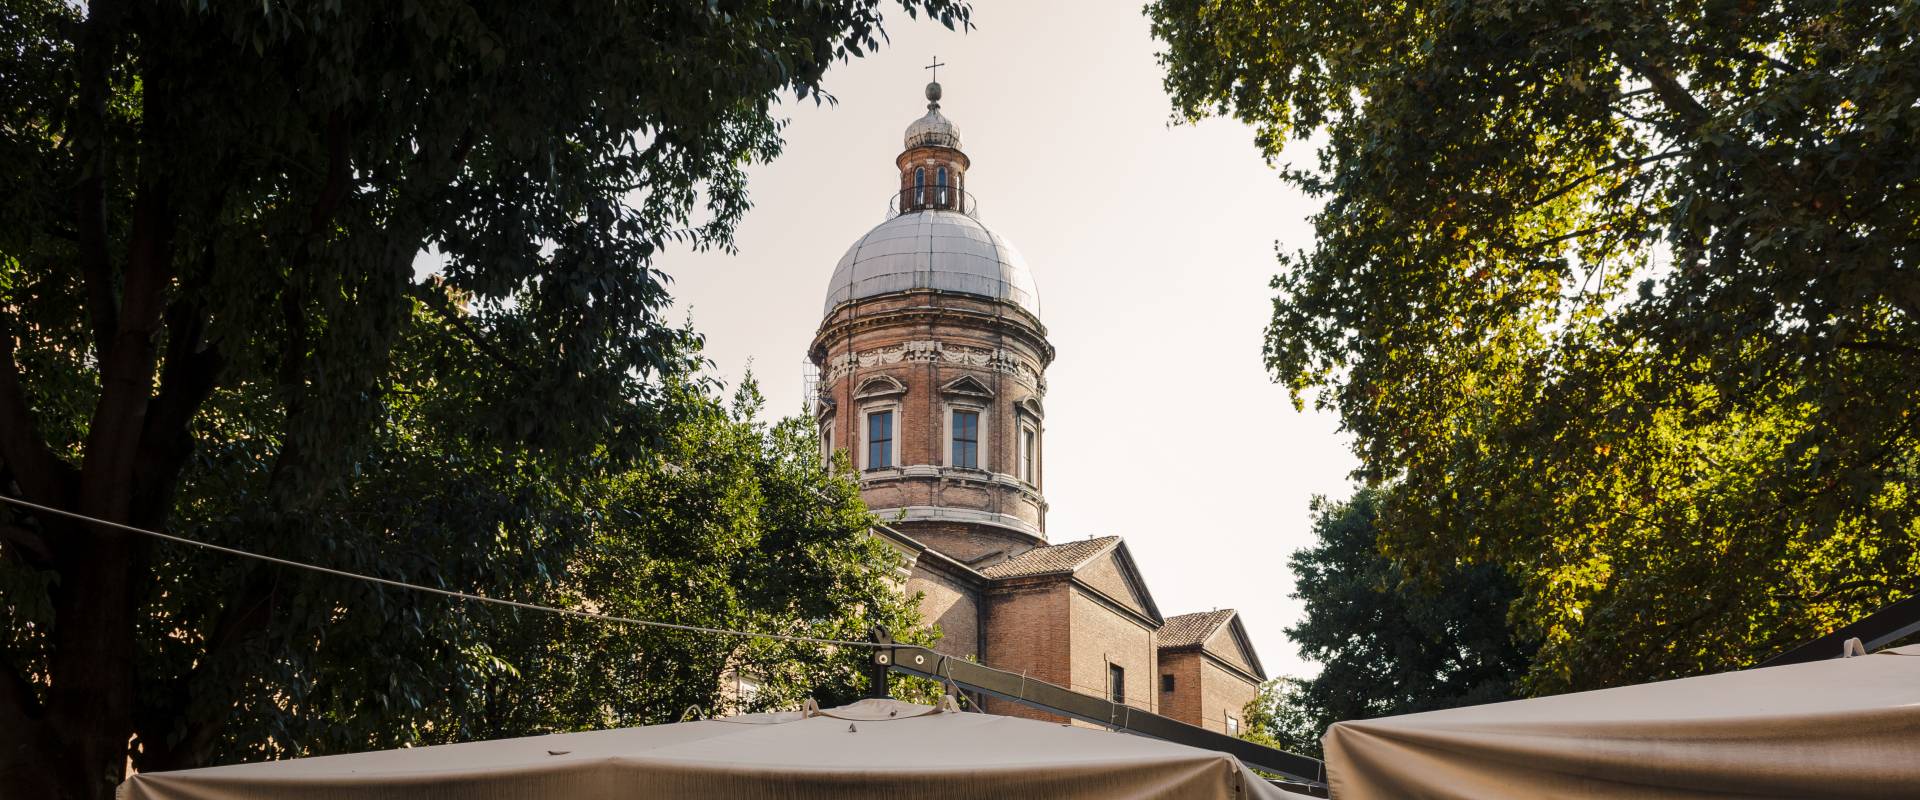 Chiesa del Voto, Modena, vista della cupola foto di Acnaibinidrat